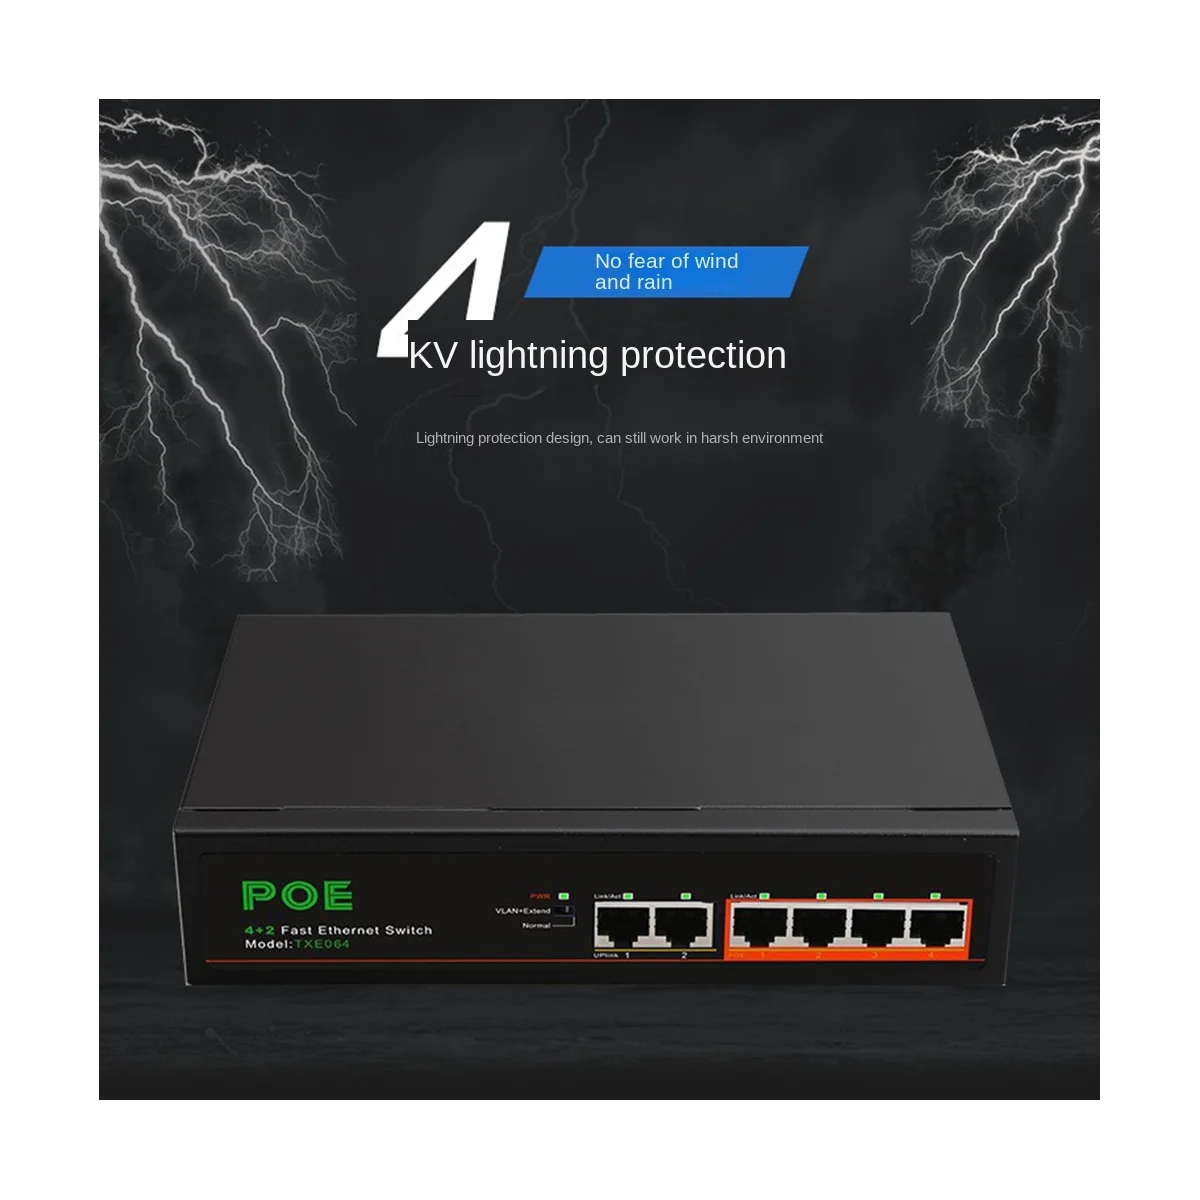 6 Портов POE-коммутатора 4-PoE + 2 UP-Link Сеть Fast Ethernet 100 Мбит/с, Концентратор Домашней сети, Адаптер Серии Power Connect-US Plug Изображение 2